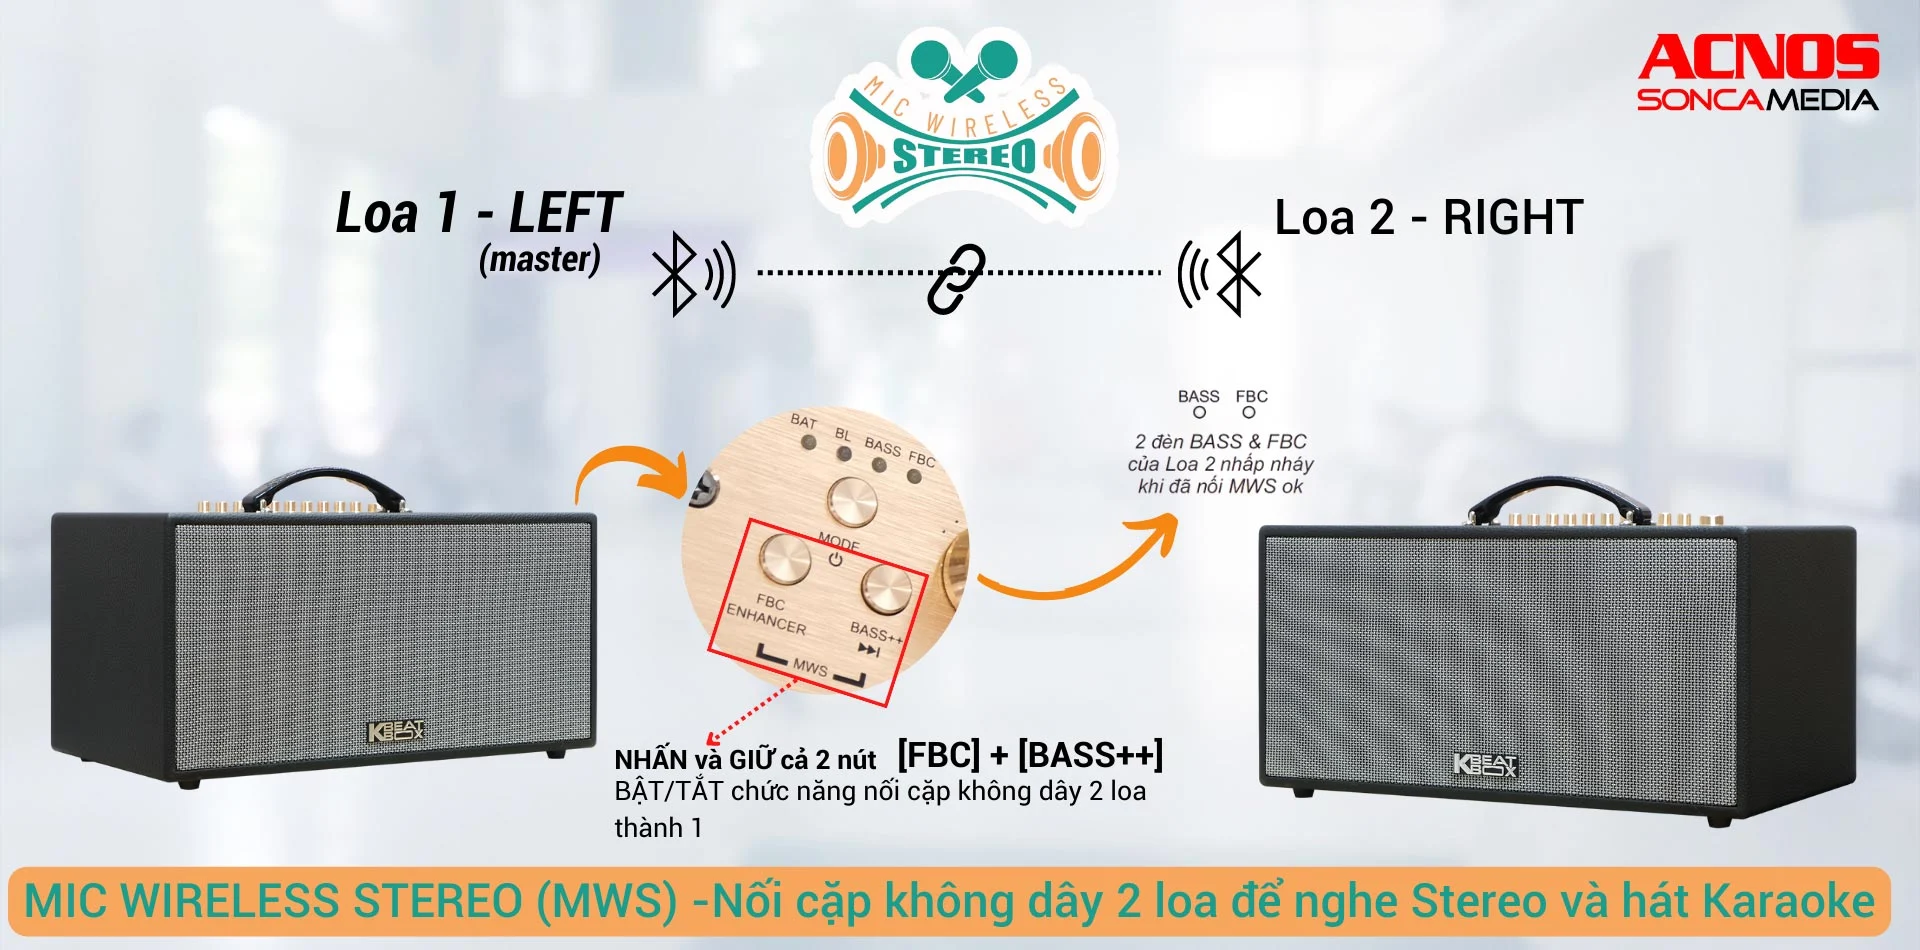 Mic Wireless Stereo là một trong những tính năng mới của loa CS450neo cho khả năng ghép đôi 2 loa di động